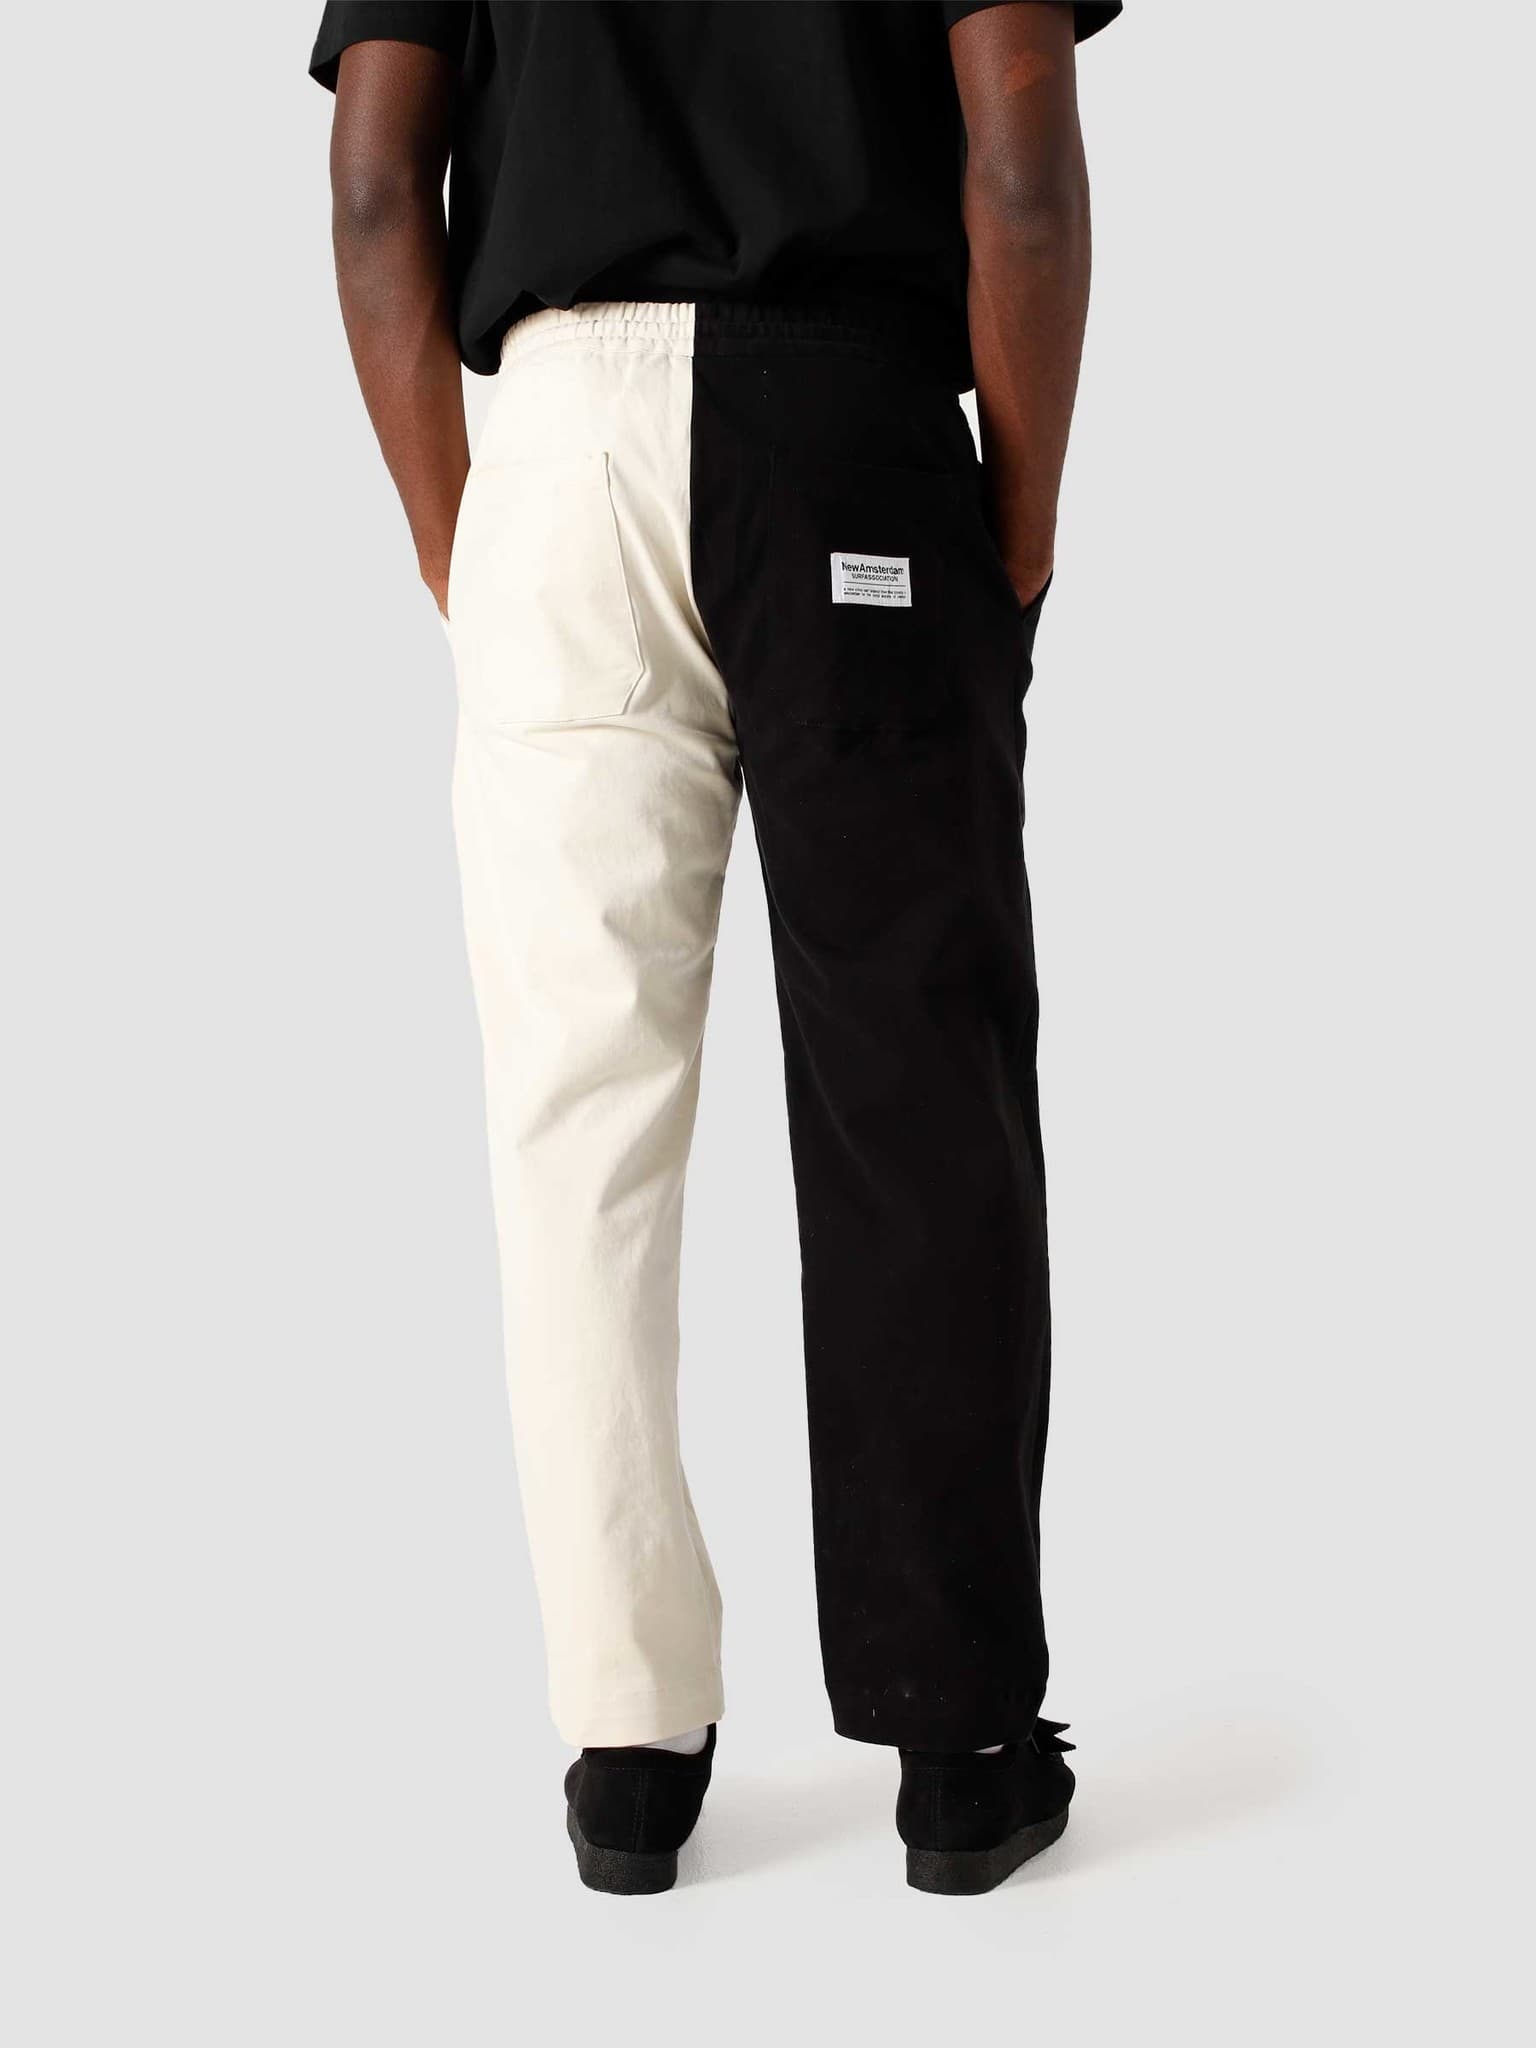 Work Trouser Black White 2021062